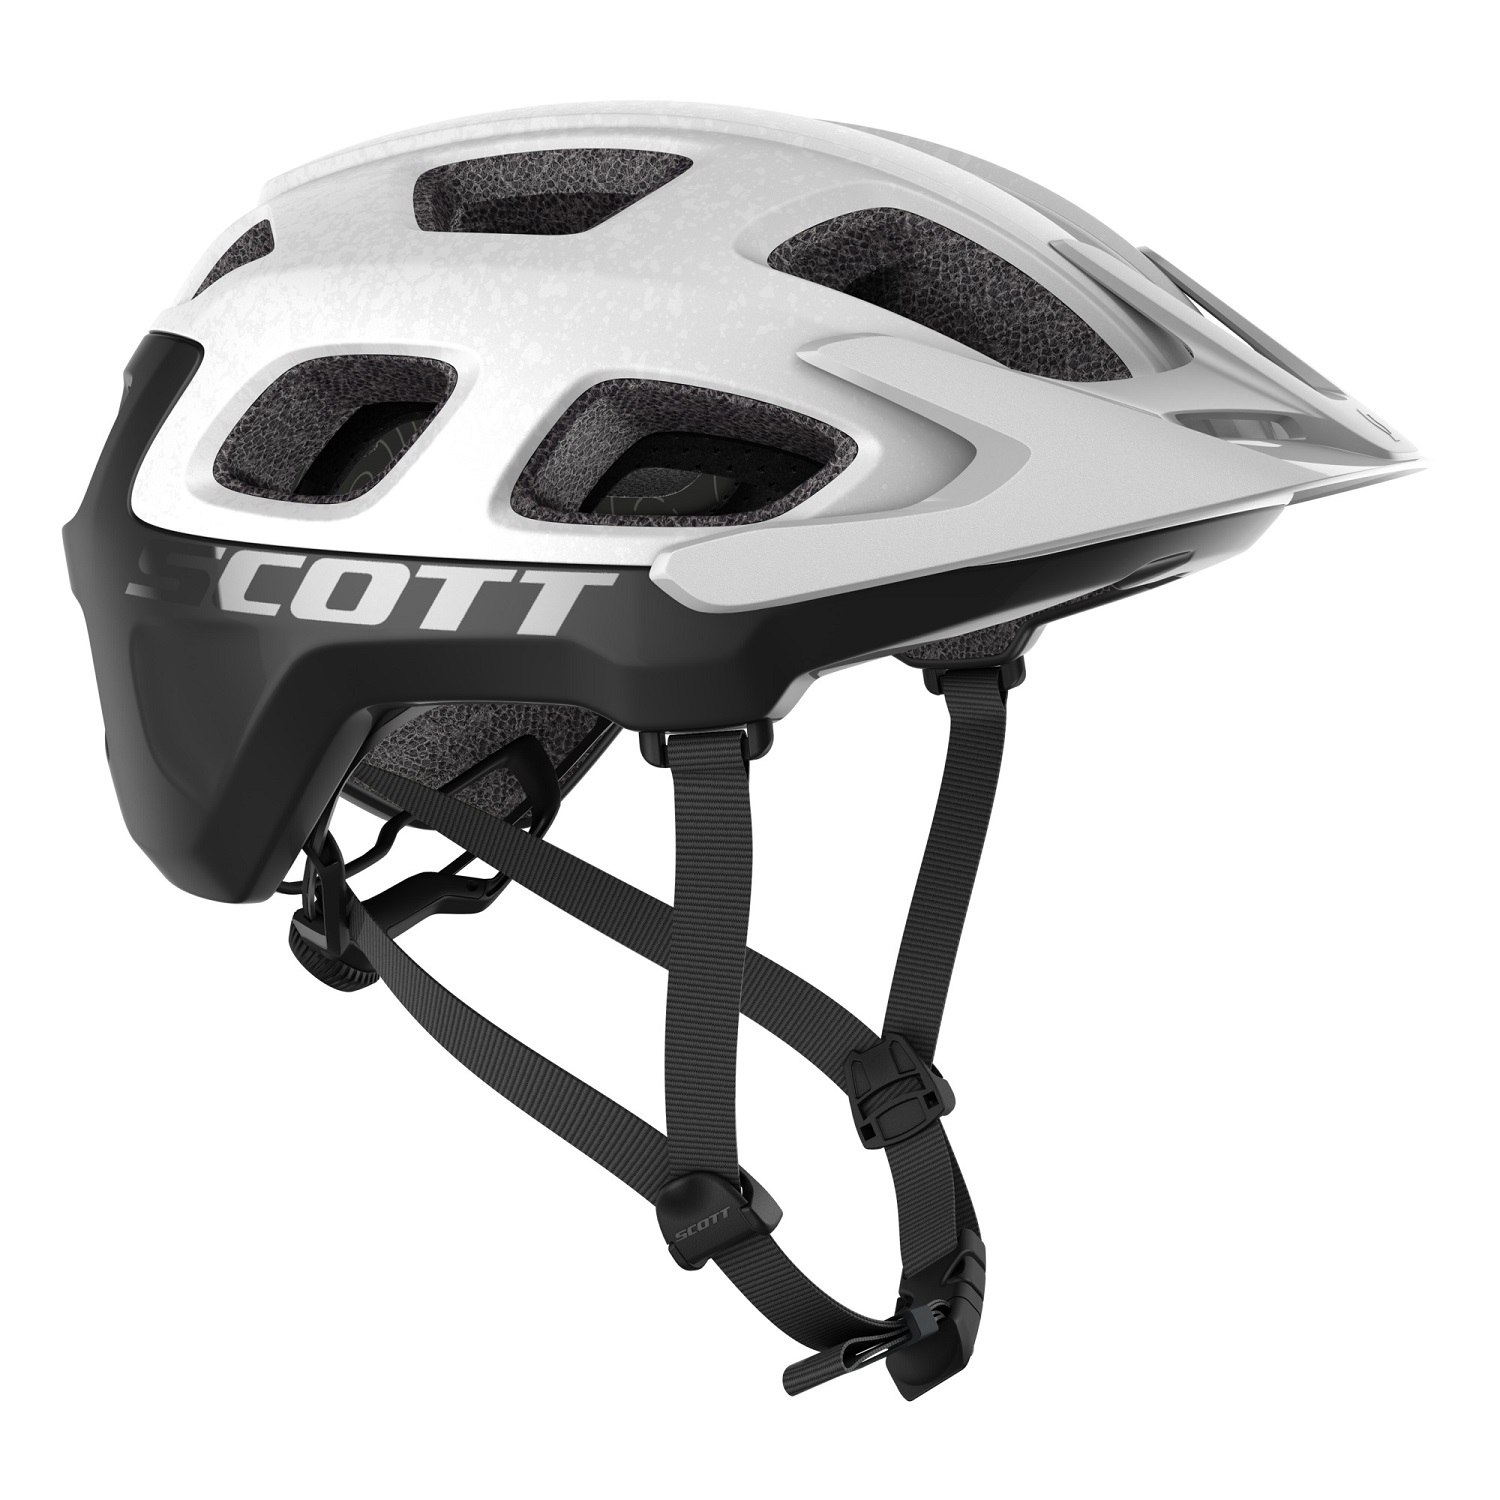 Produktbild von SCOTT Vivo Plus (CE) Helm - white/black